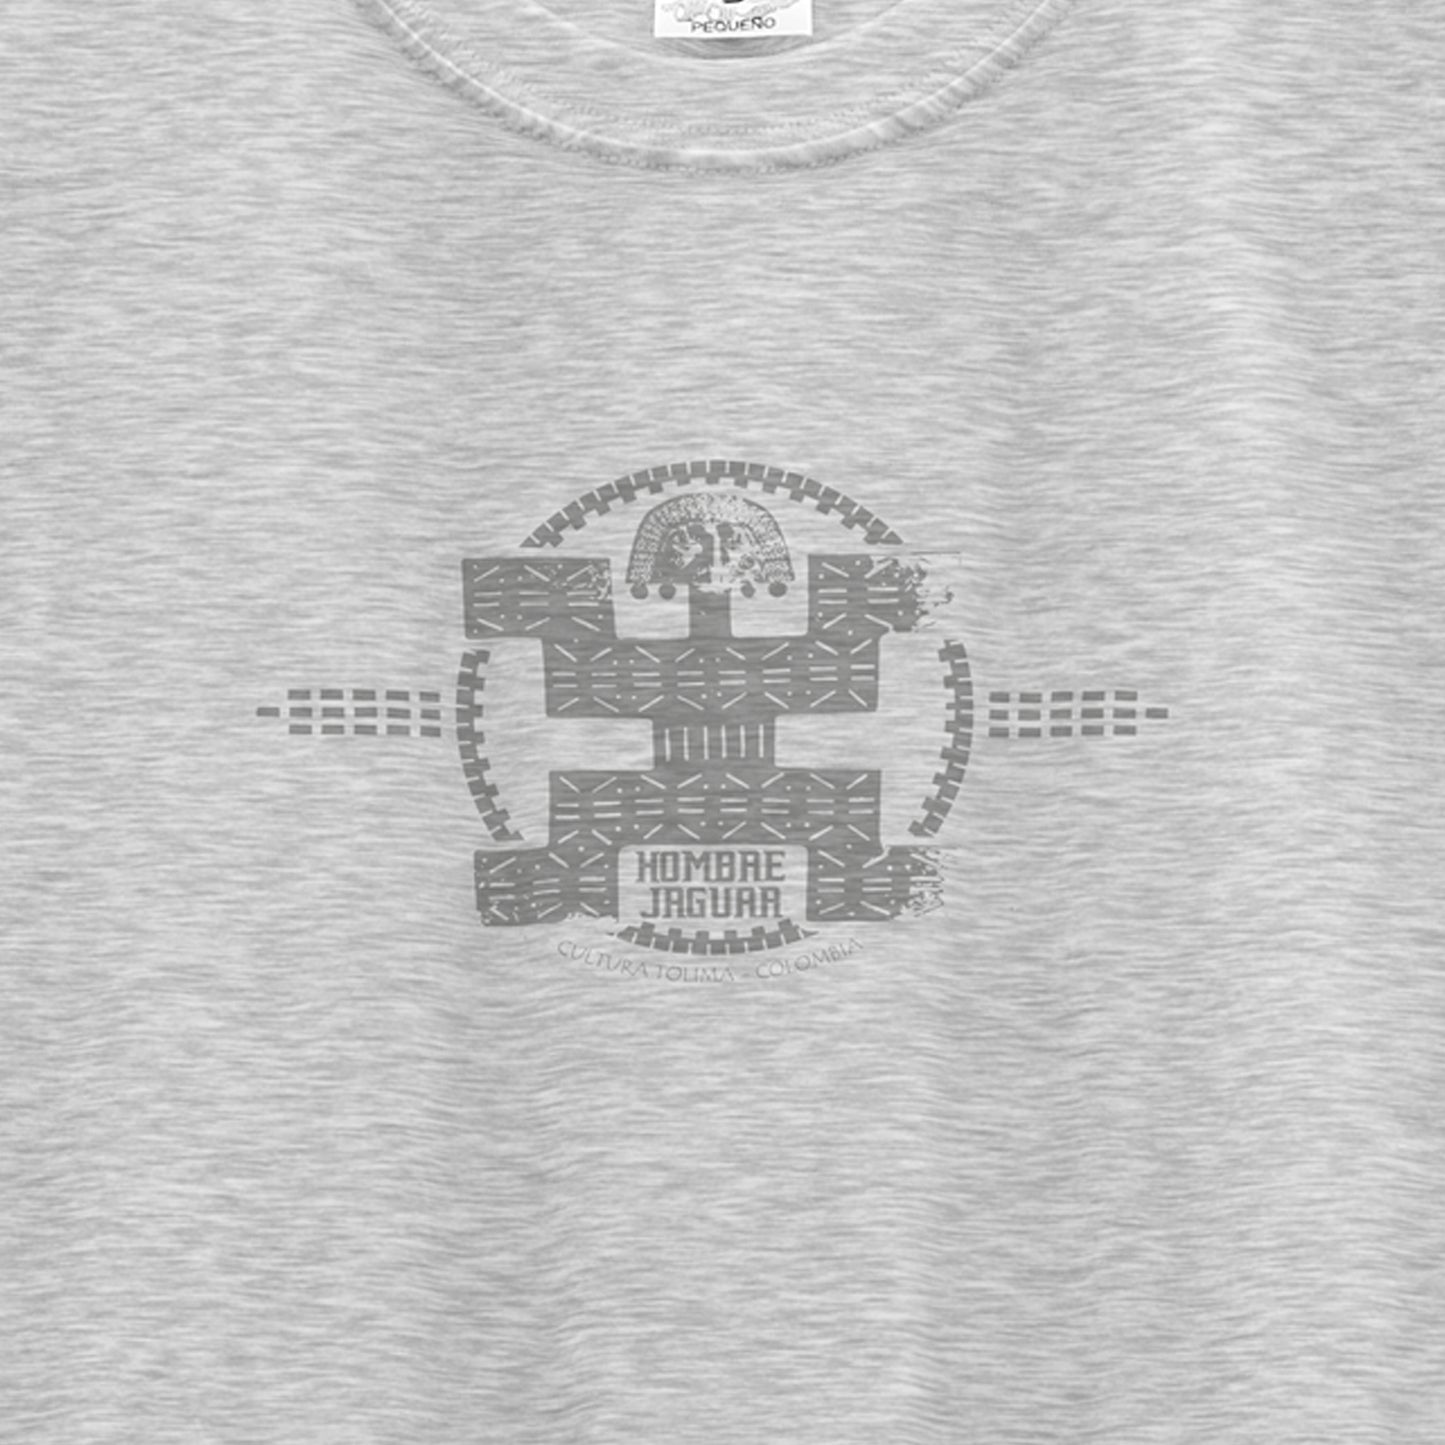 Camiseta Hombre Jaguar Hombre - 52061